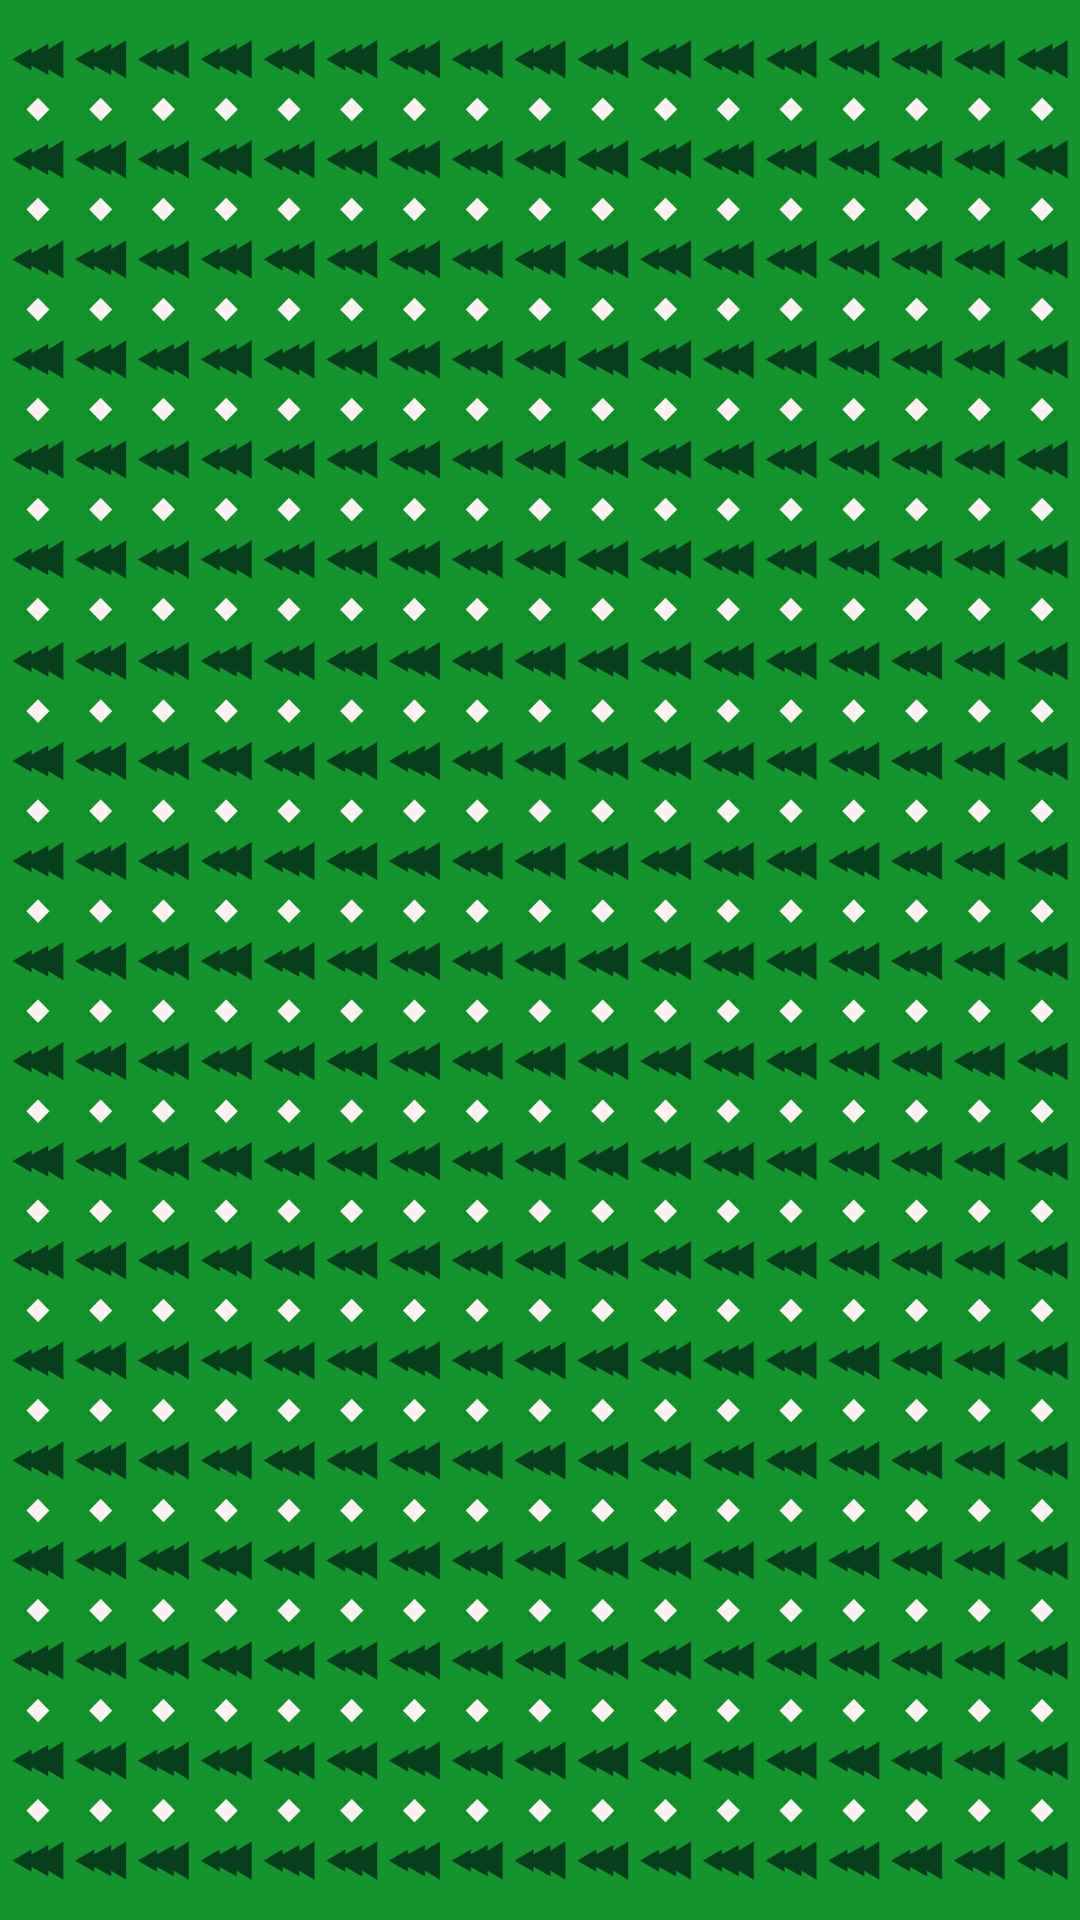 Green wallpaper